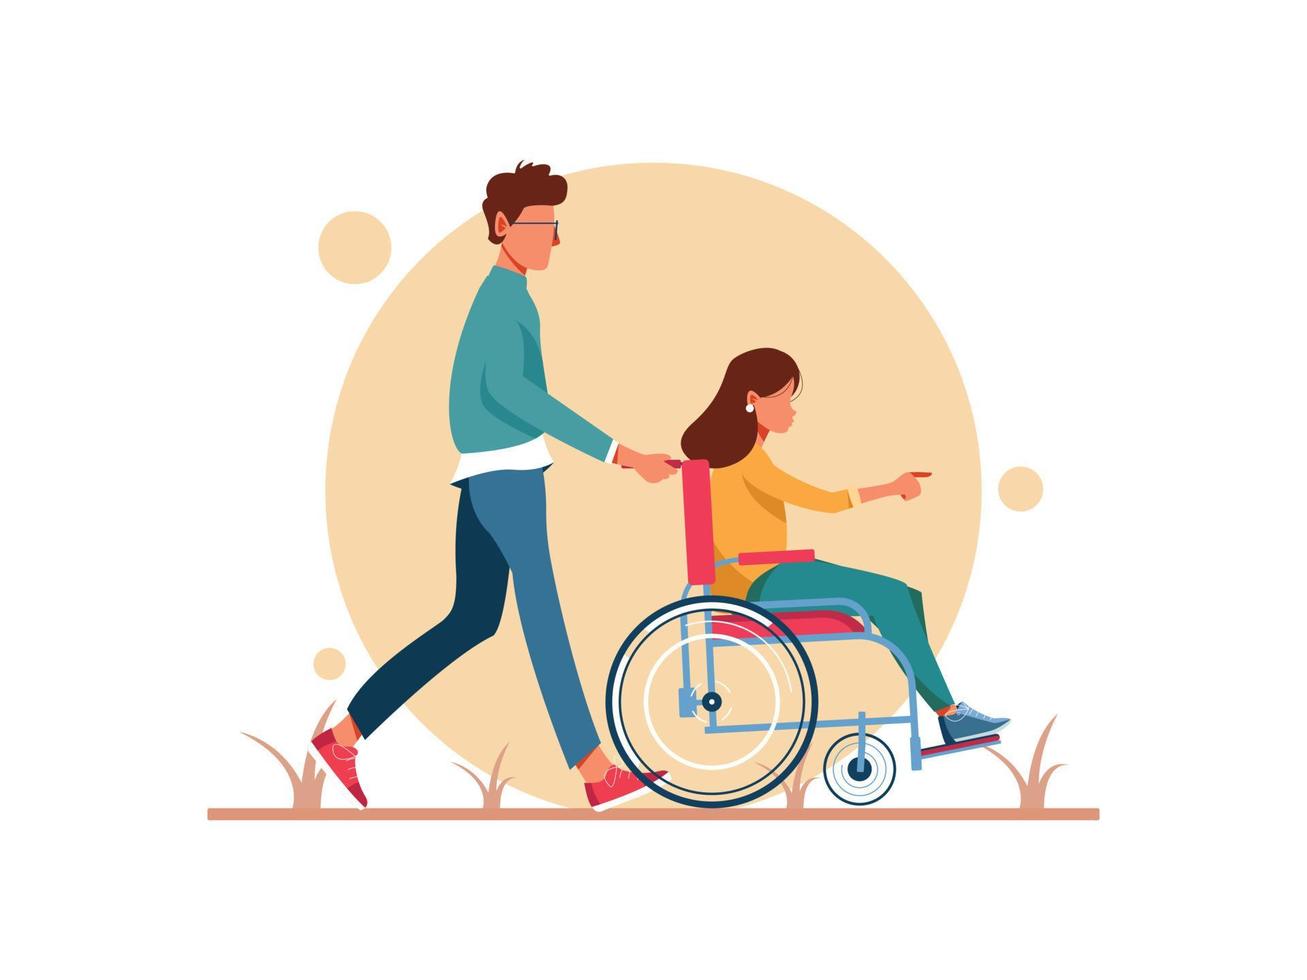 journée mondiale du handicap. homme et femme en fauteuil roulant marchant. personnage féminin en rééducation après un traumatisme ou une maladie. illustration de personnage vecteur